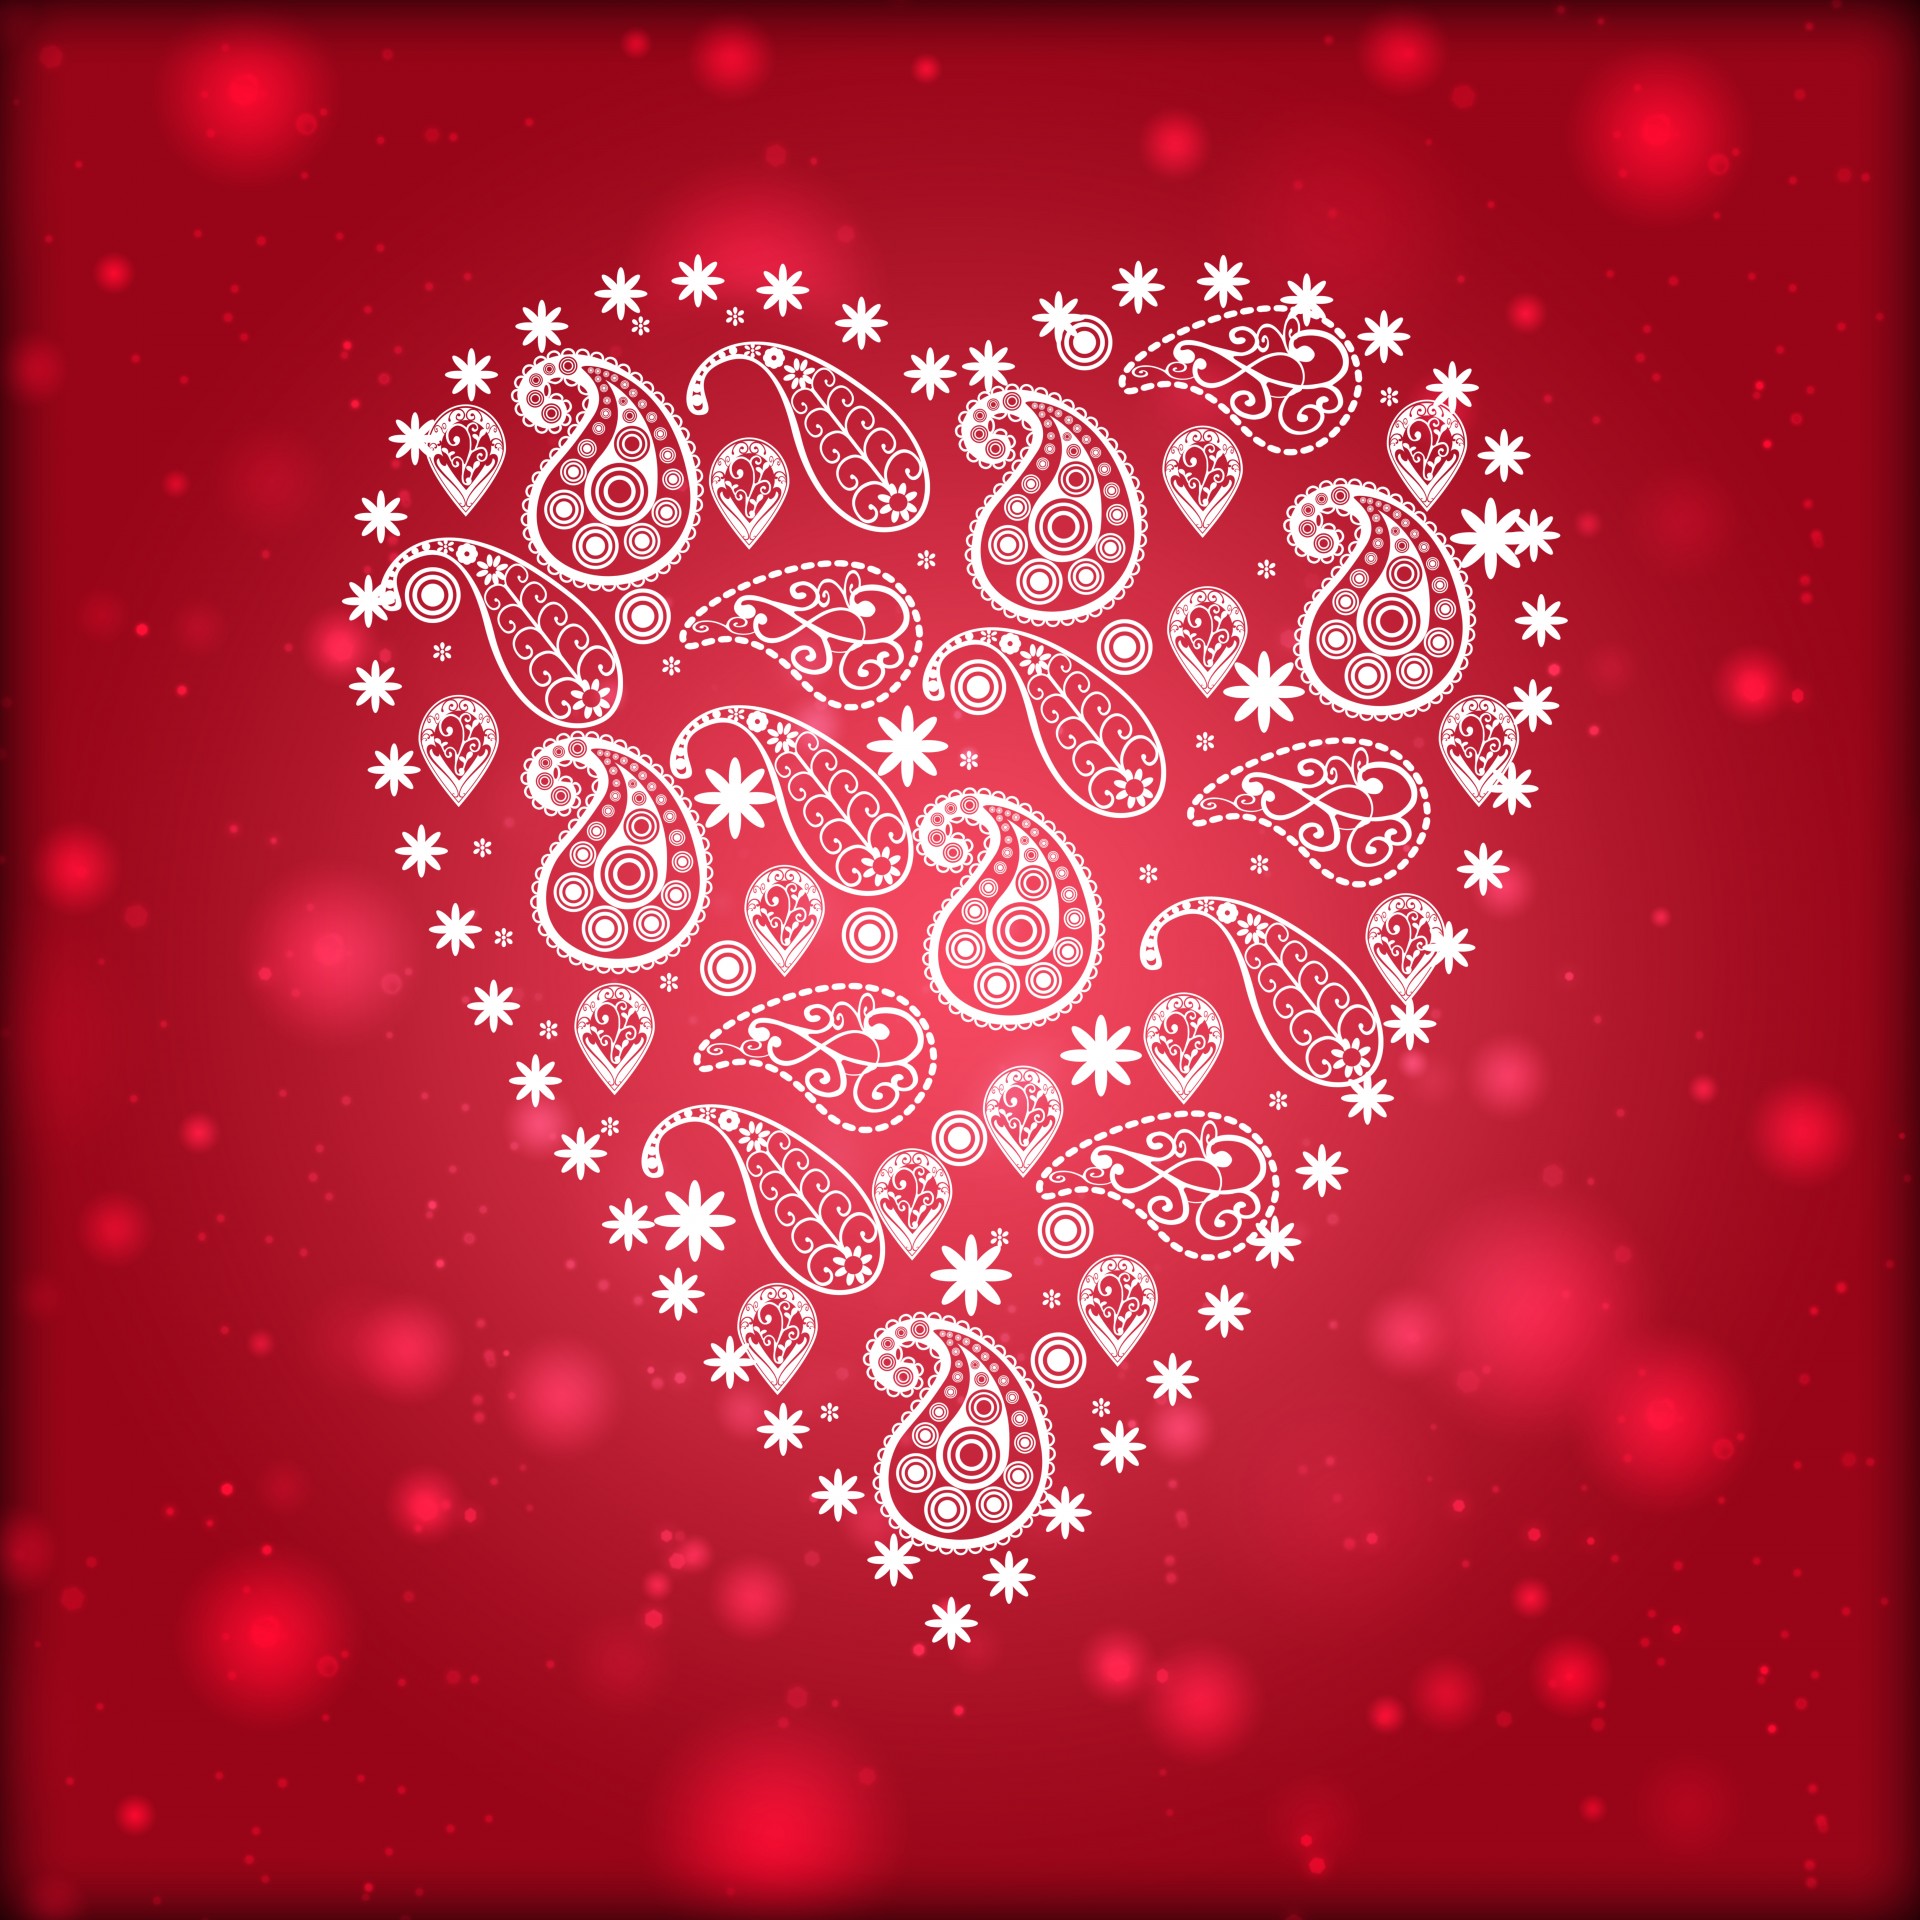 paisley pattern white heart love romance free photo